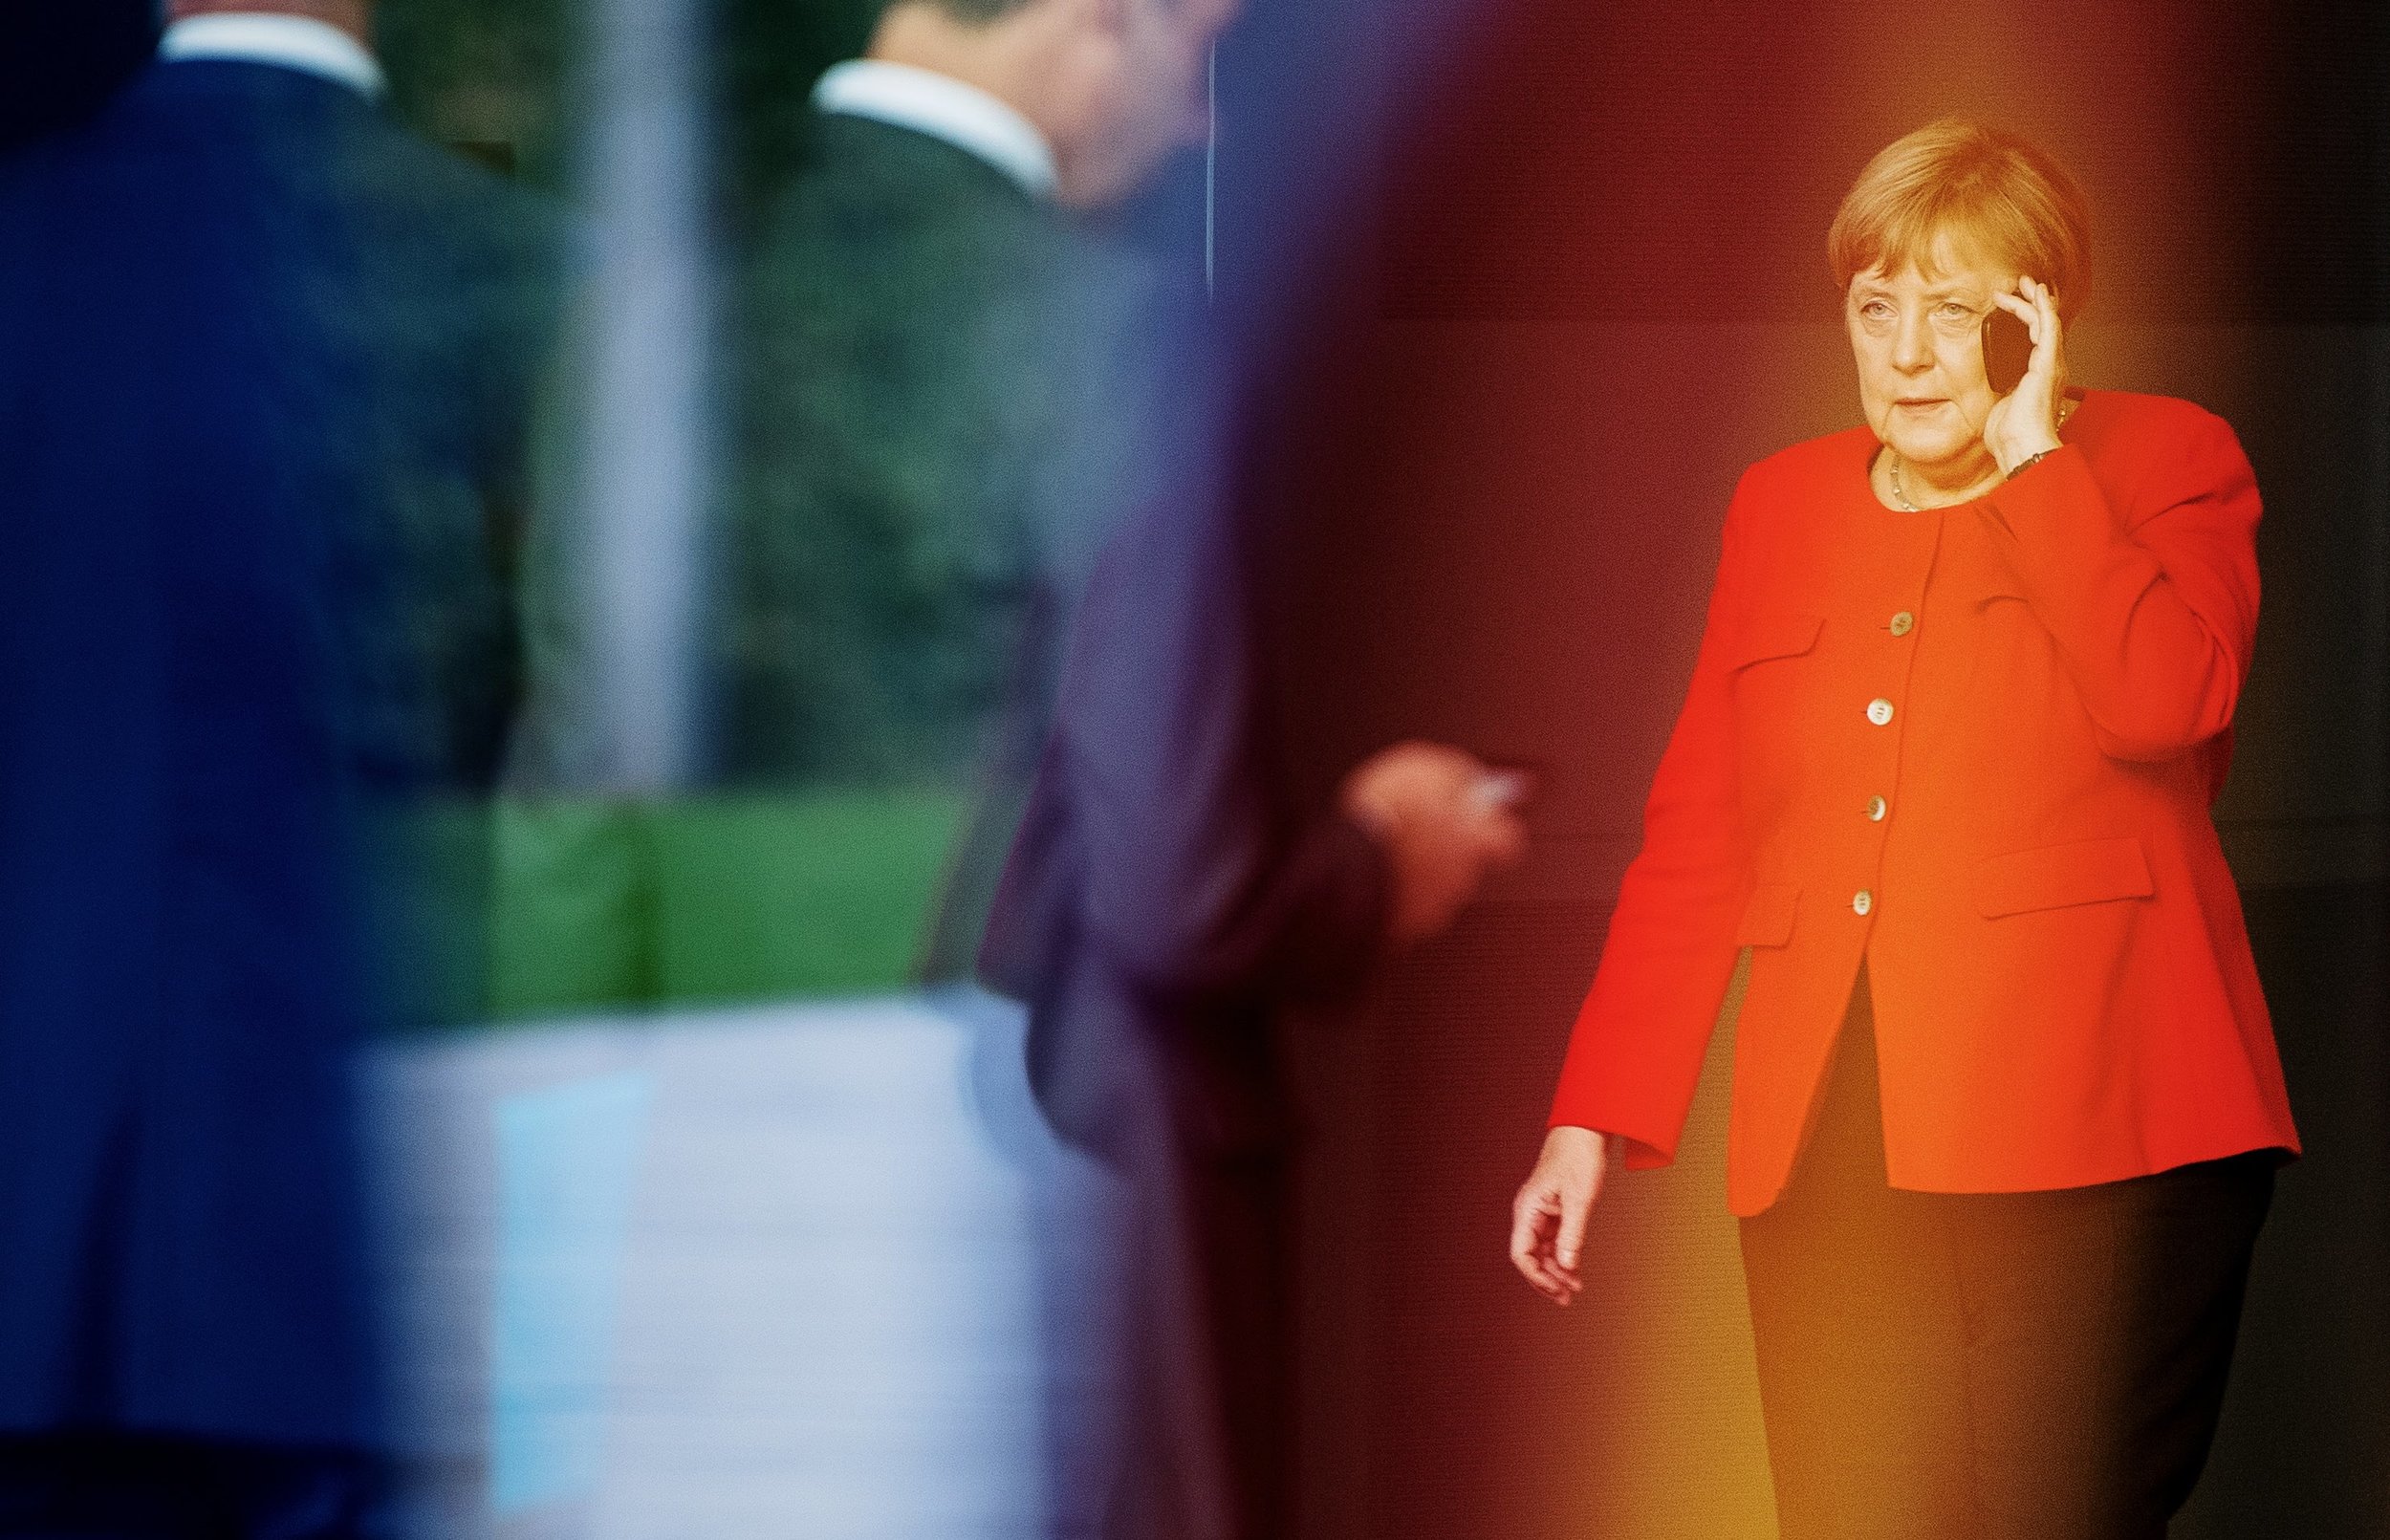  Bundeskanzlerin Angela Merkel telefoniert vor der Ankunft des tschechischen Präsidenten im Bundeskanzleramt. 